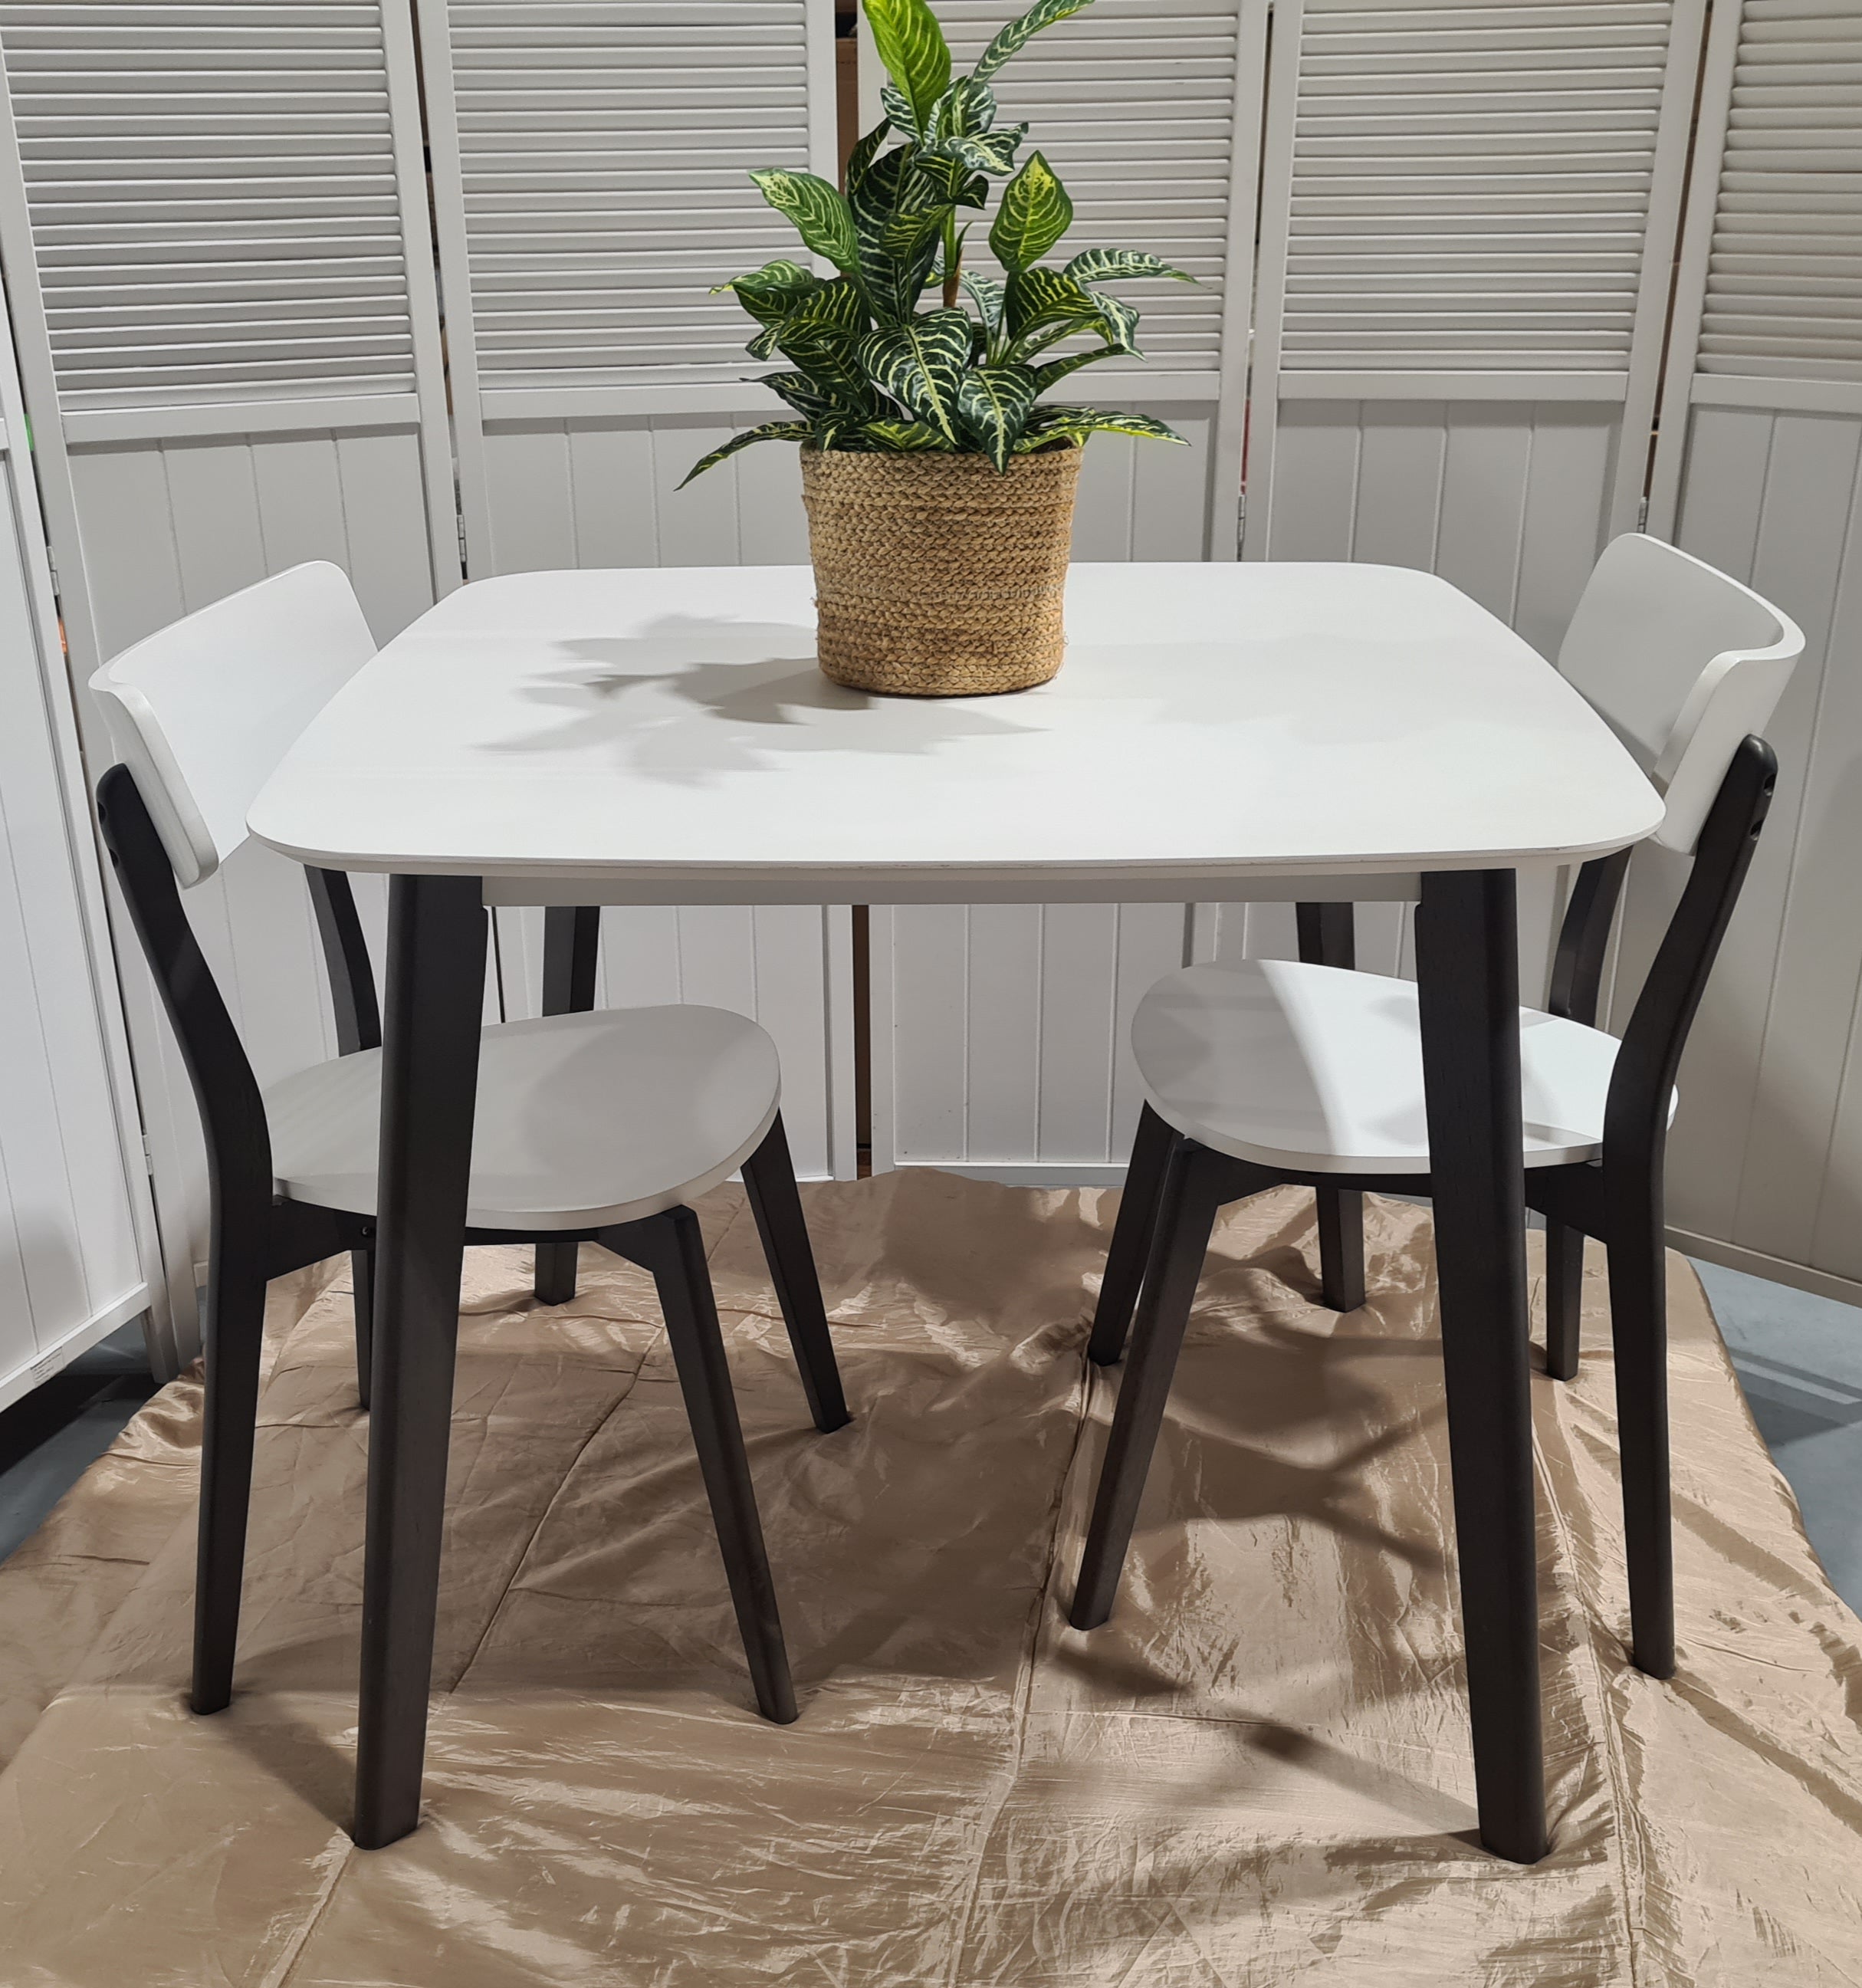 White Top Square Dining Table // Dark legs - $ / week (6 week hire)